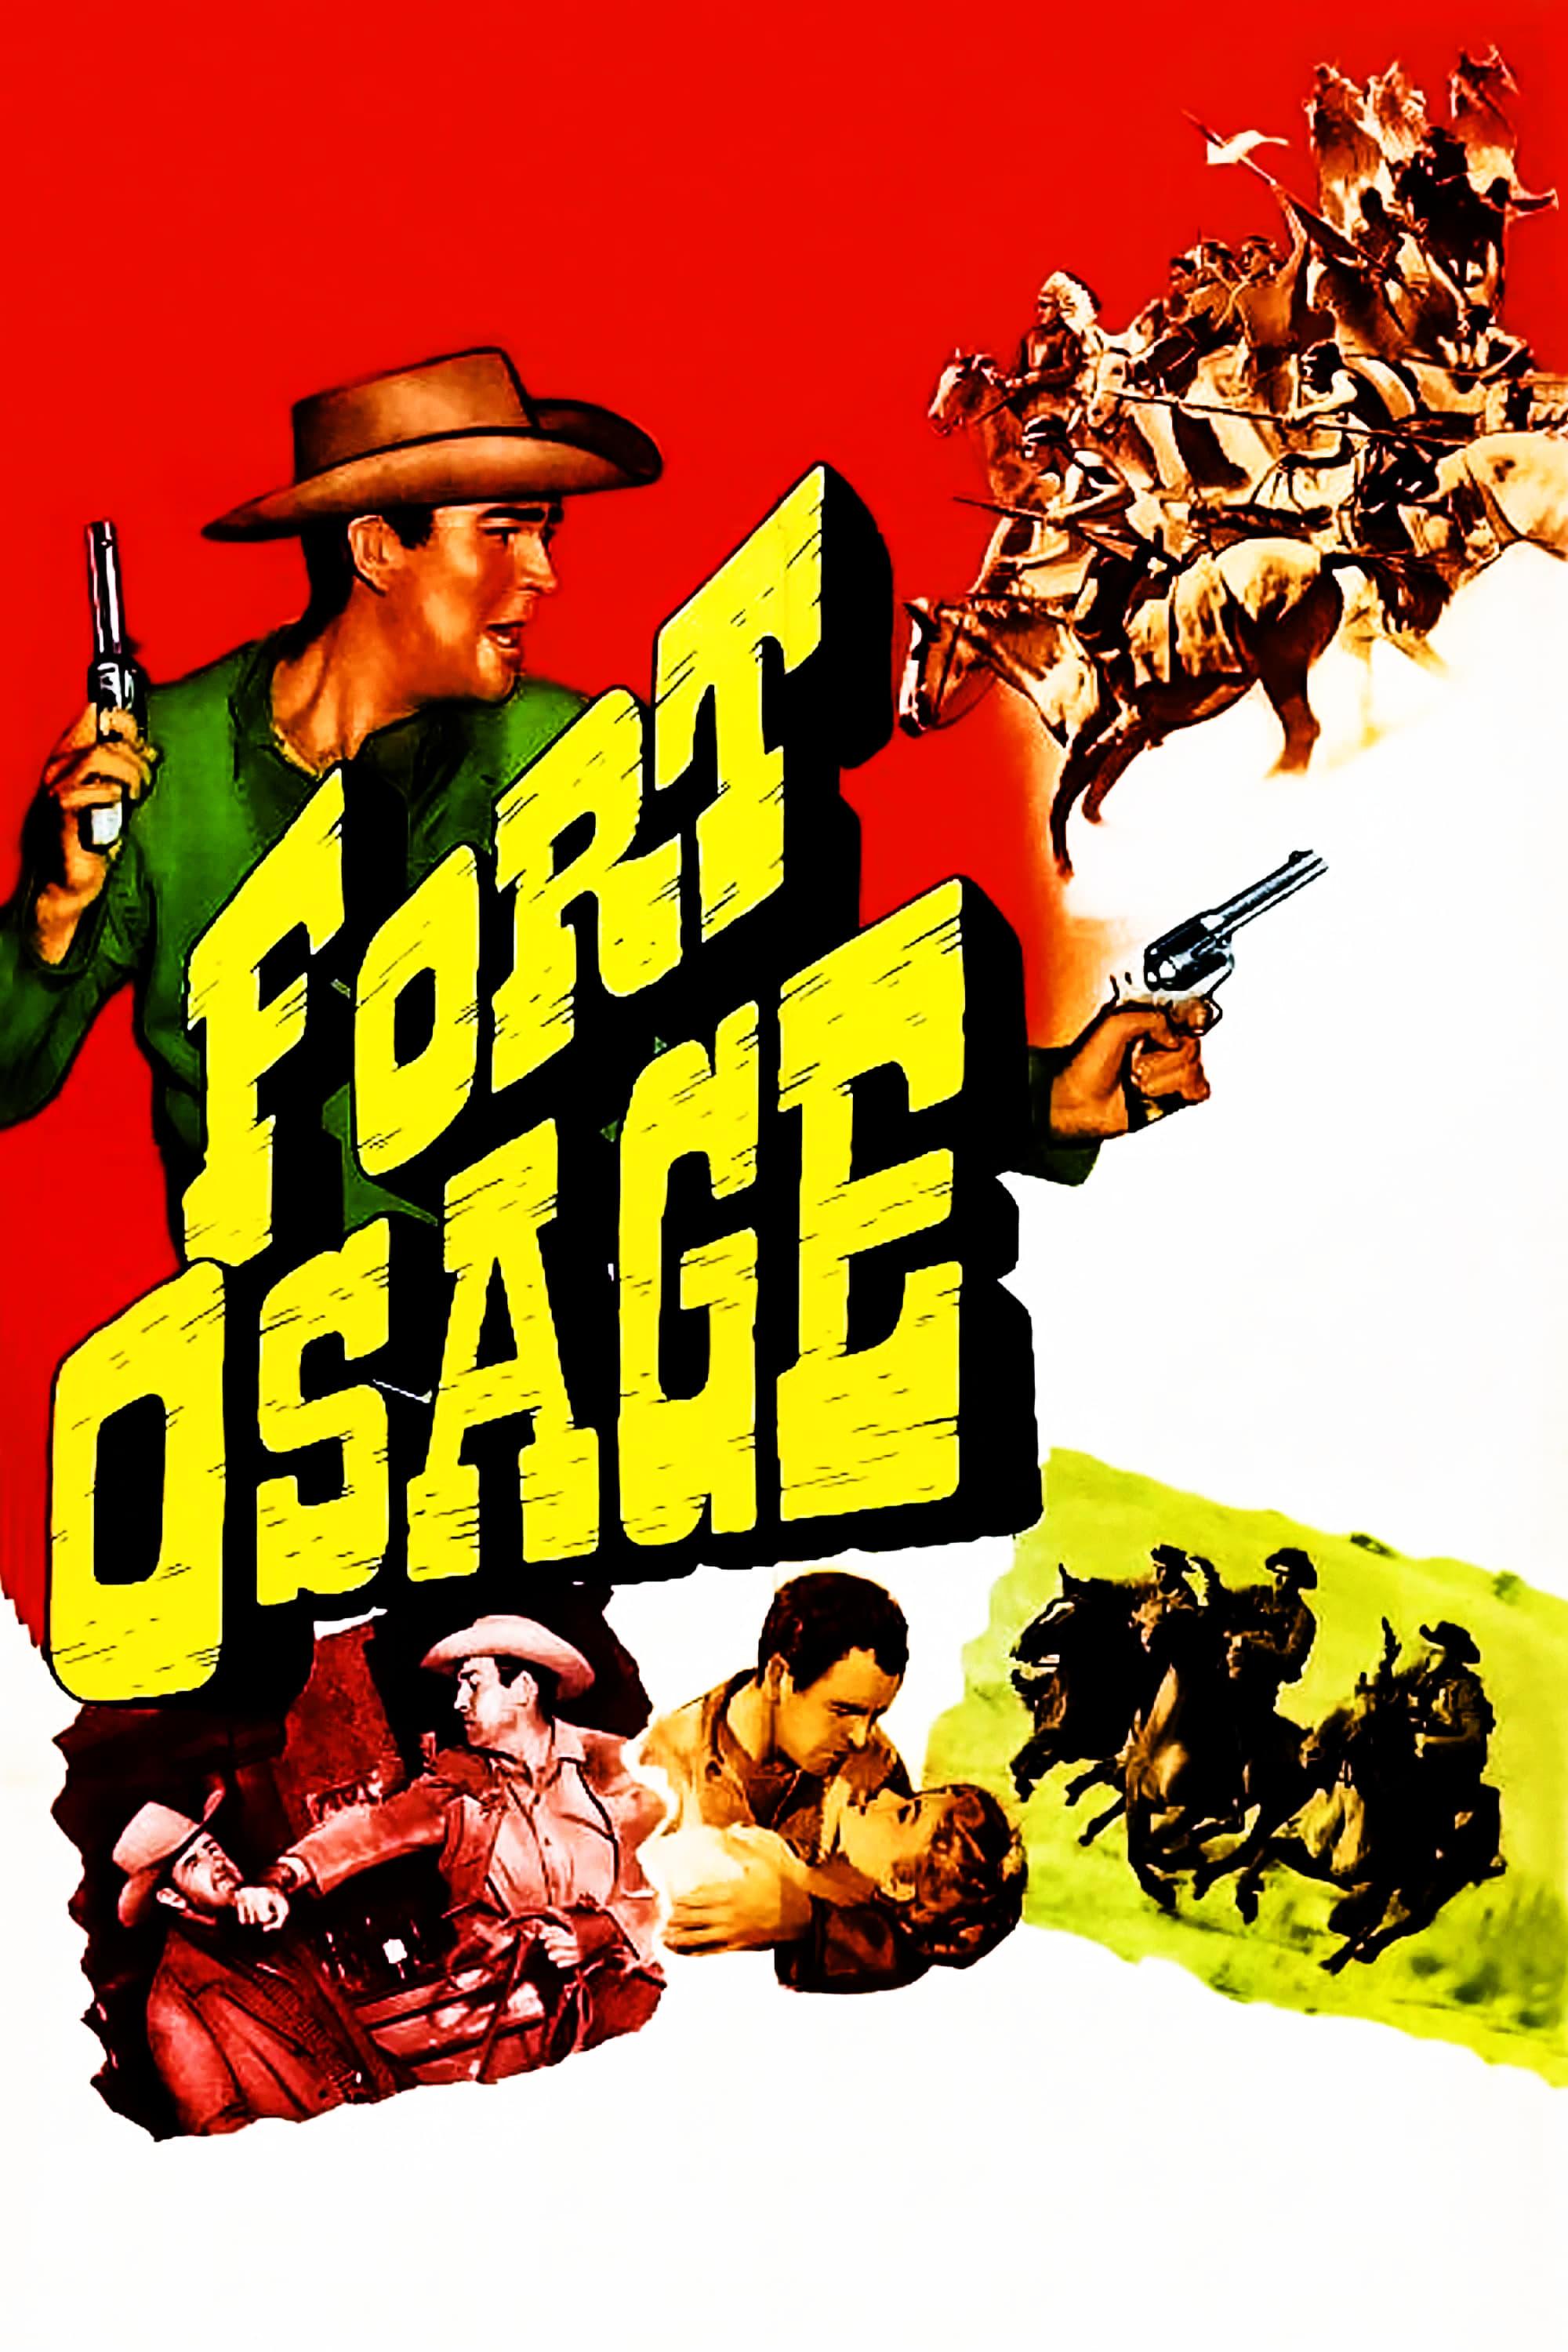 Fort Osage poster